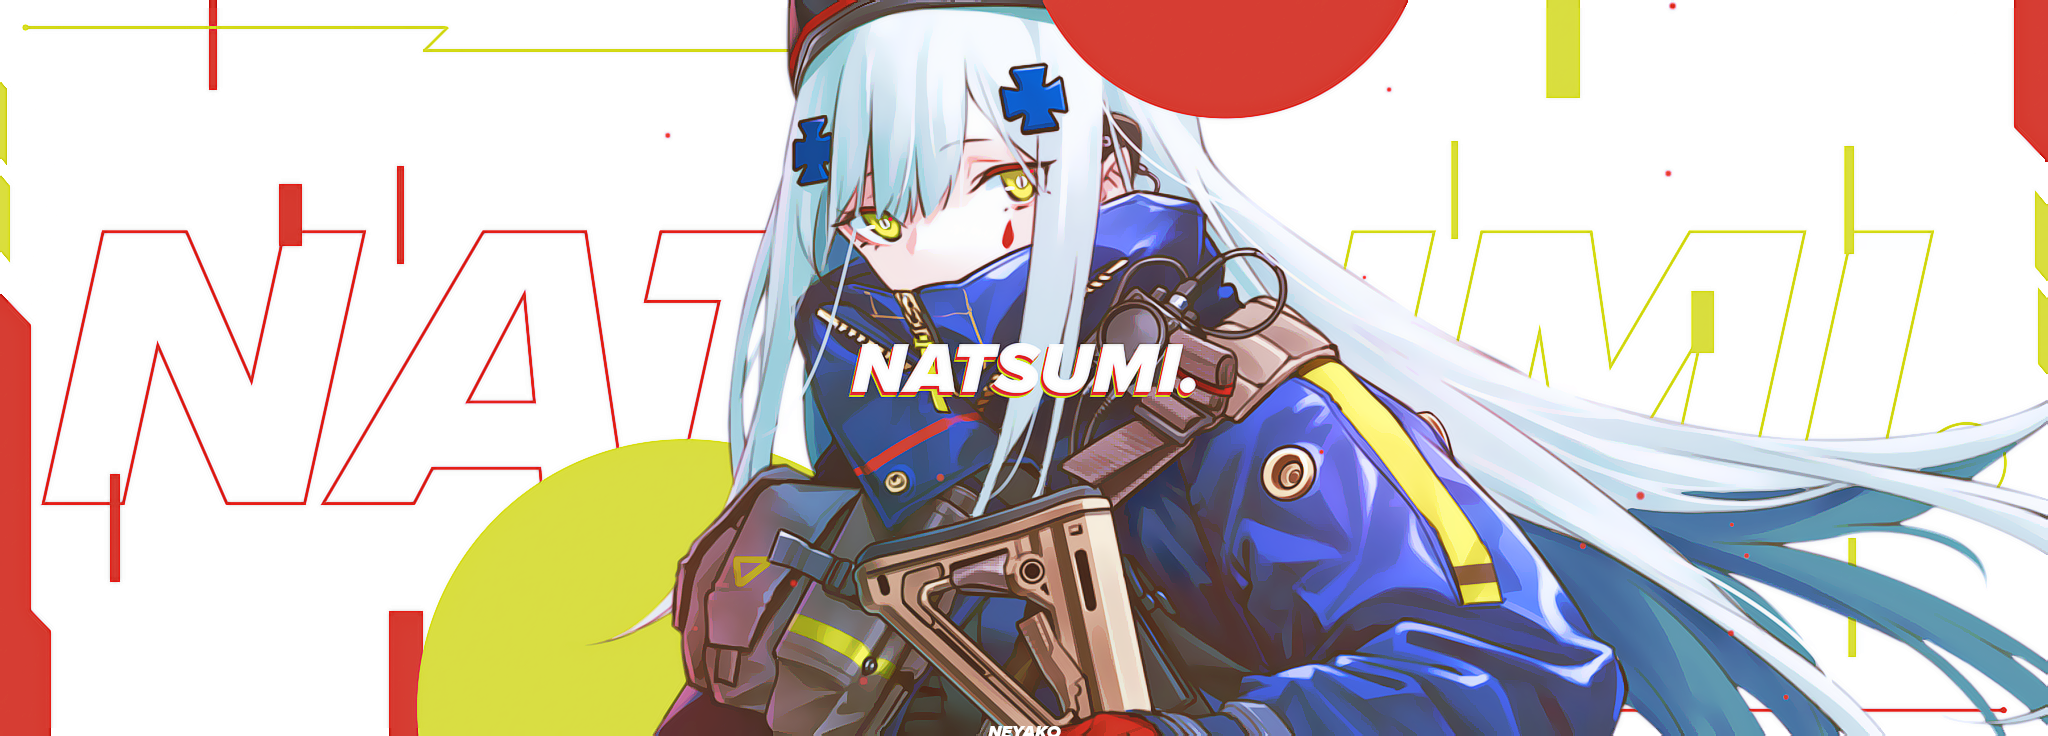 natsumi.png